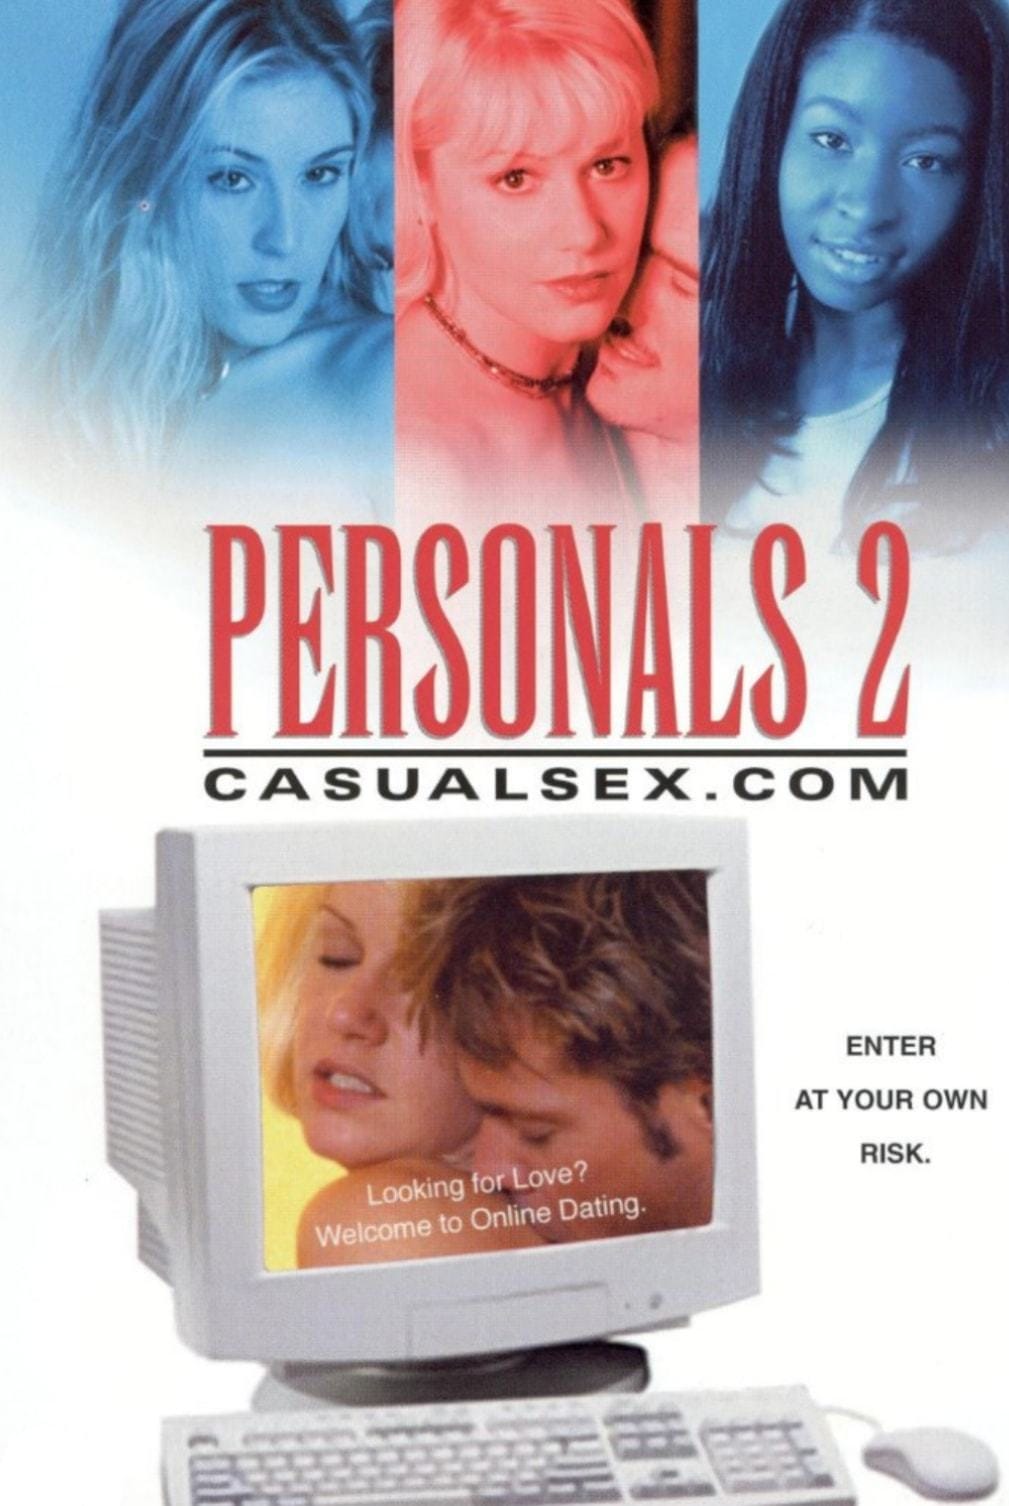 Personals II: CasualSex.com